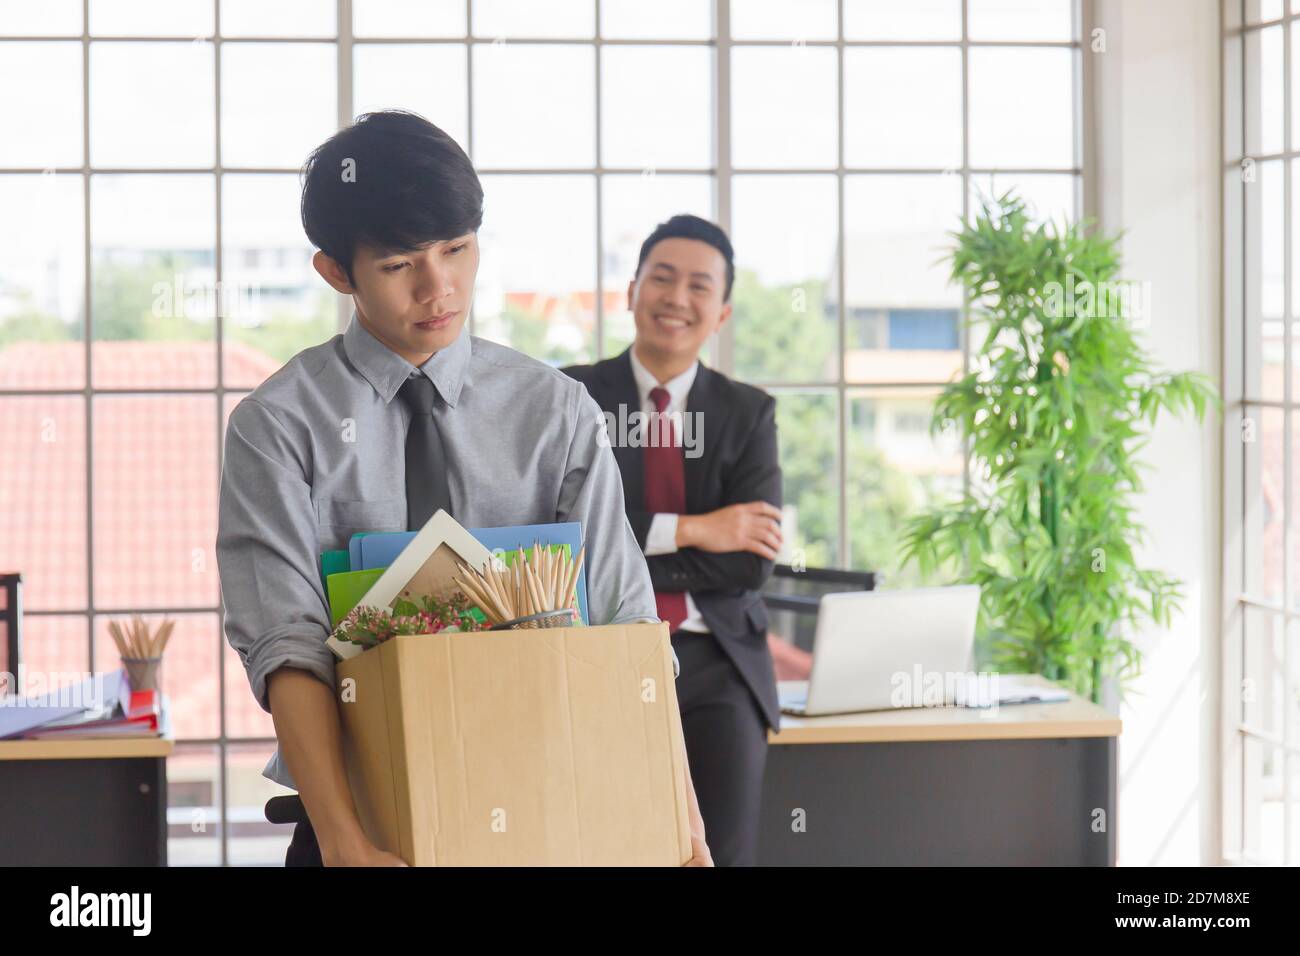 Ein asiatischer Mann, der traurigerweise einen Karton mit seinen persönlichen Sachen in der Hand hält, und sein Manager lächelt hinter ihm auf einem Schreibtisch in einem Büro. Stockfoto